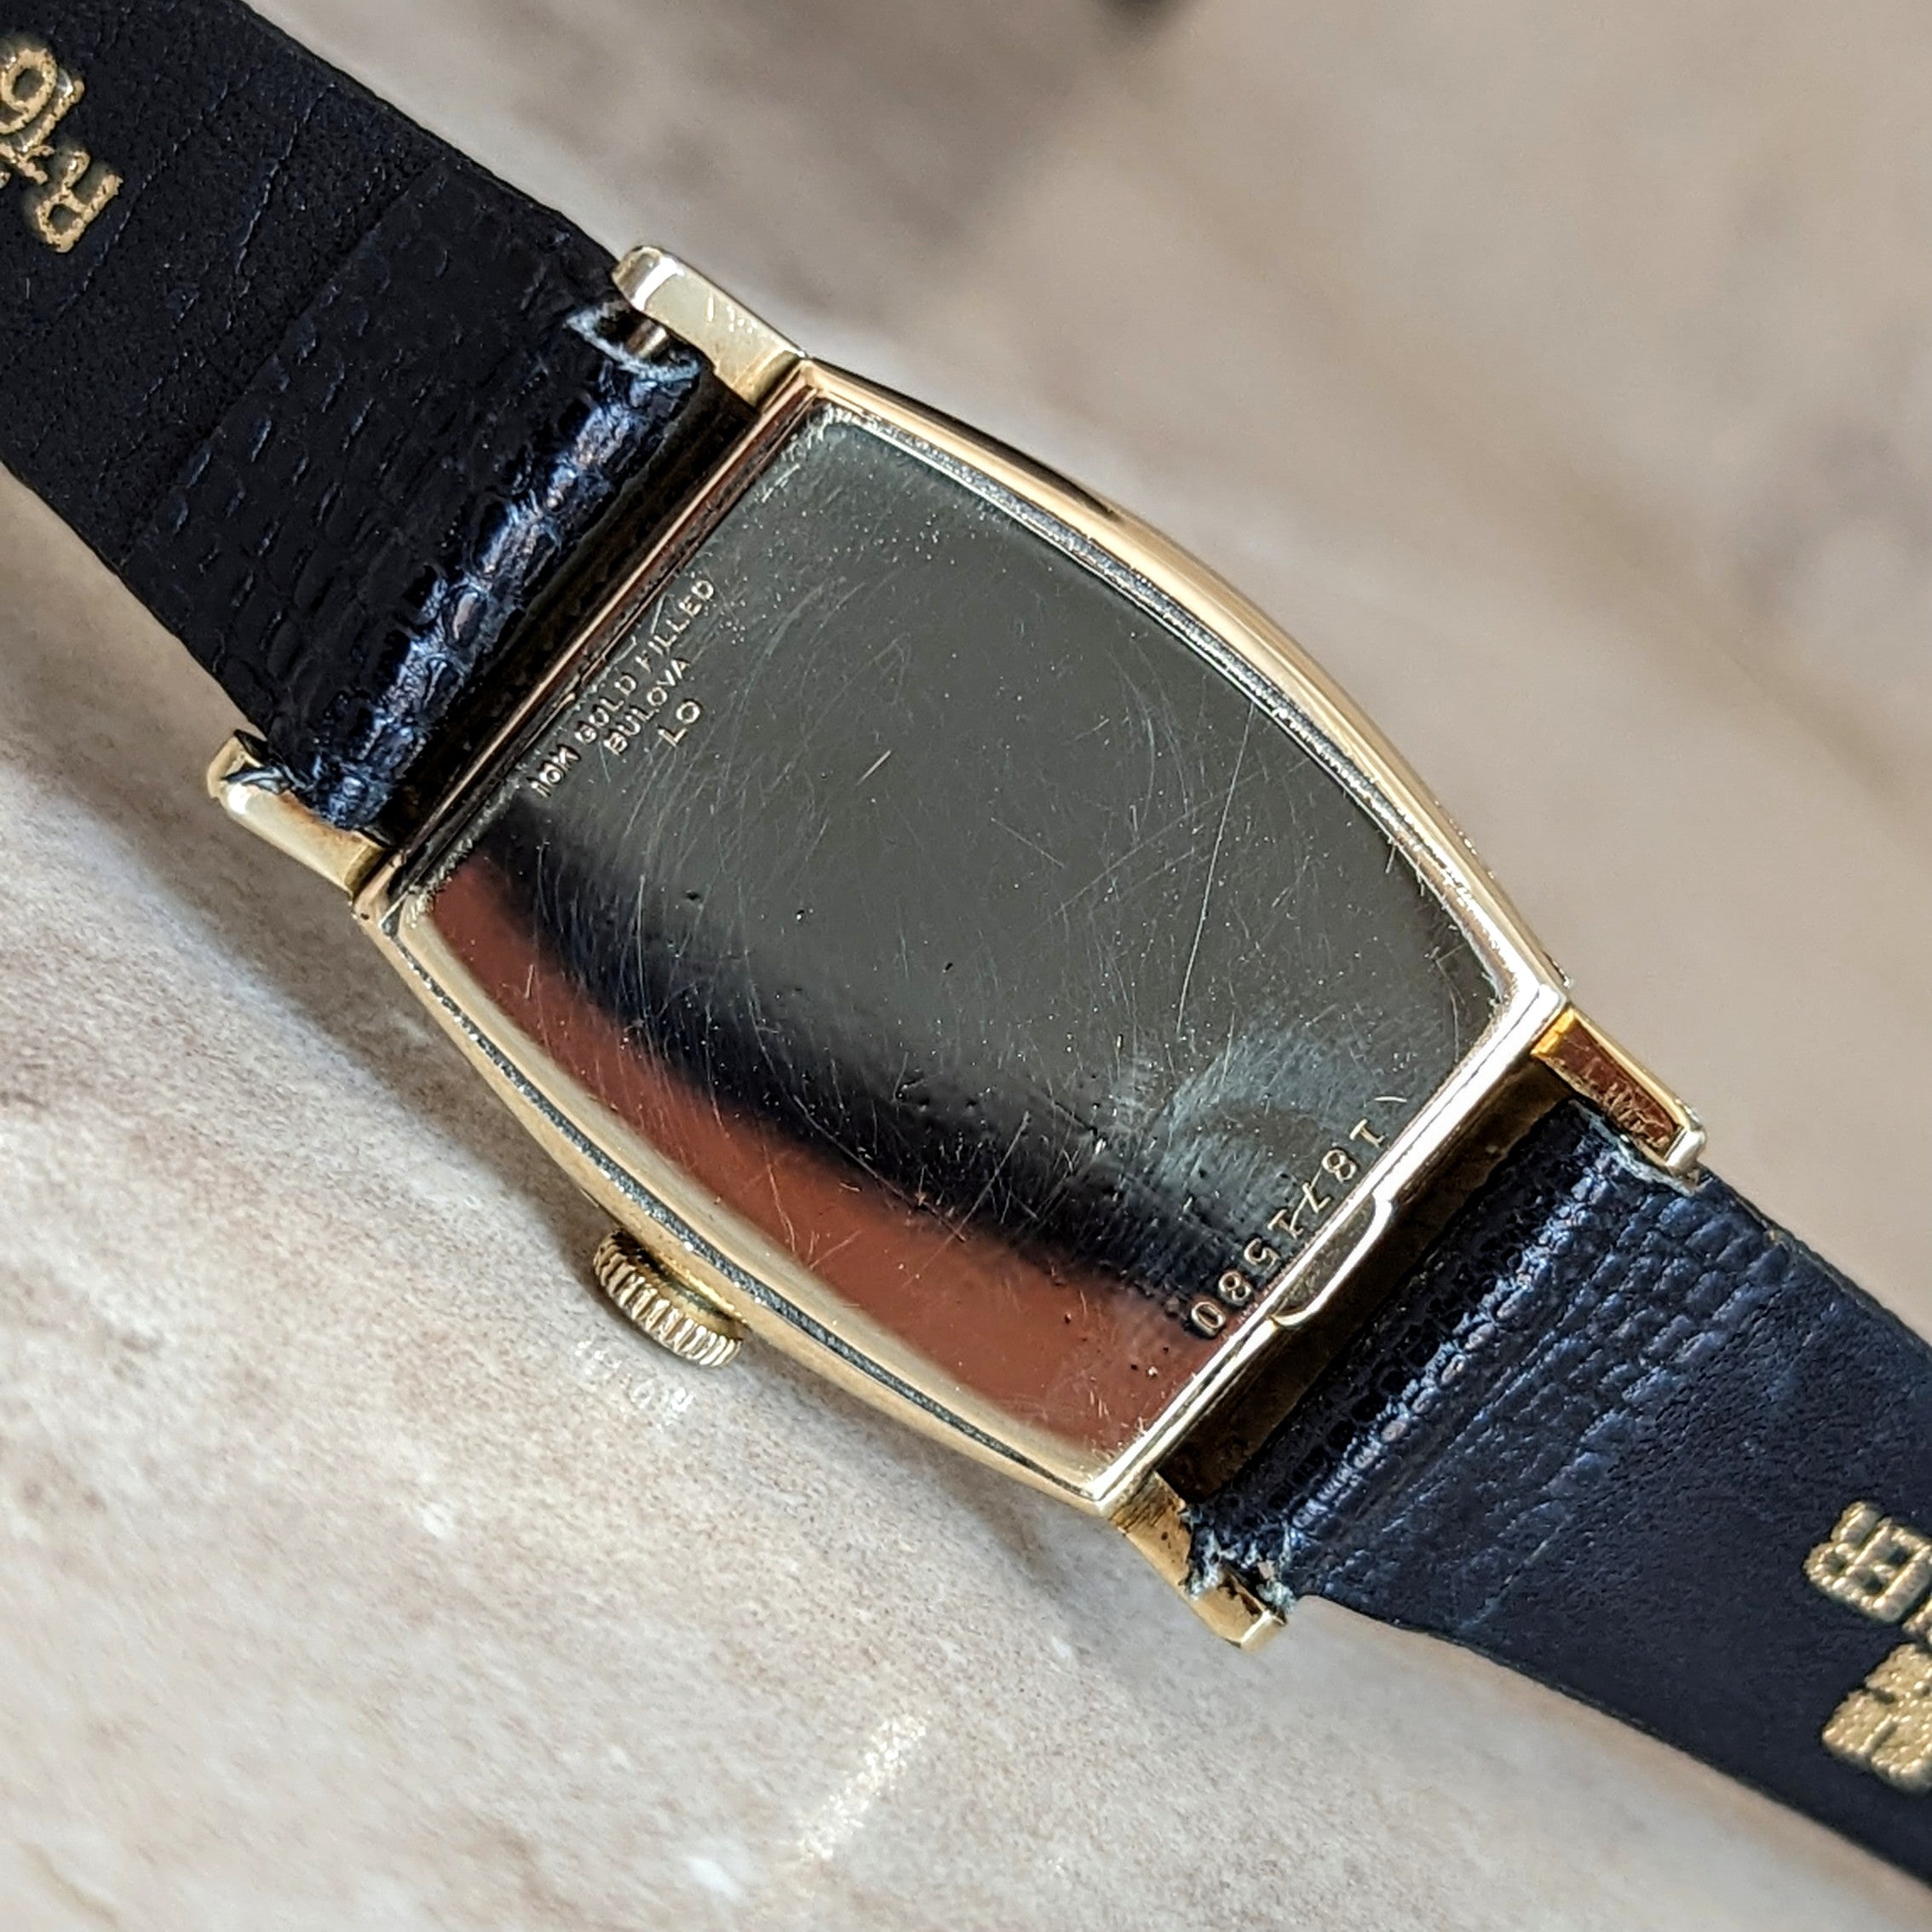 1950 BULOVA “His Excellency CC” Wristwatch 21 Jewels U.S.A. Made Wristwatch